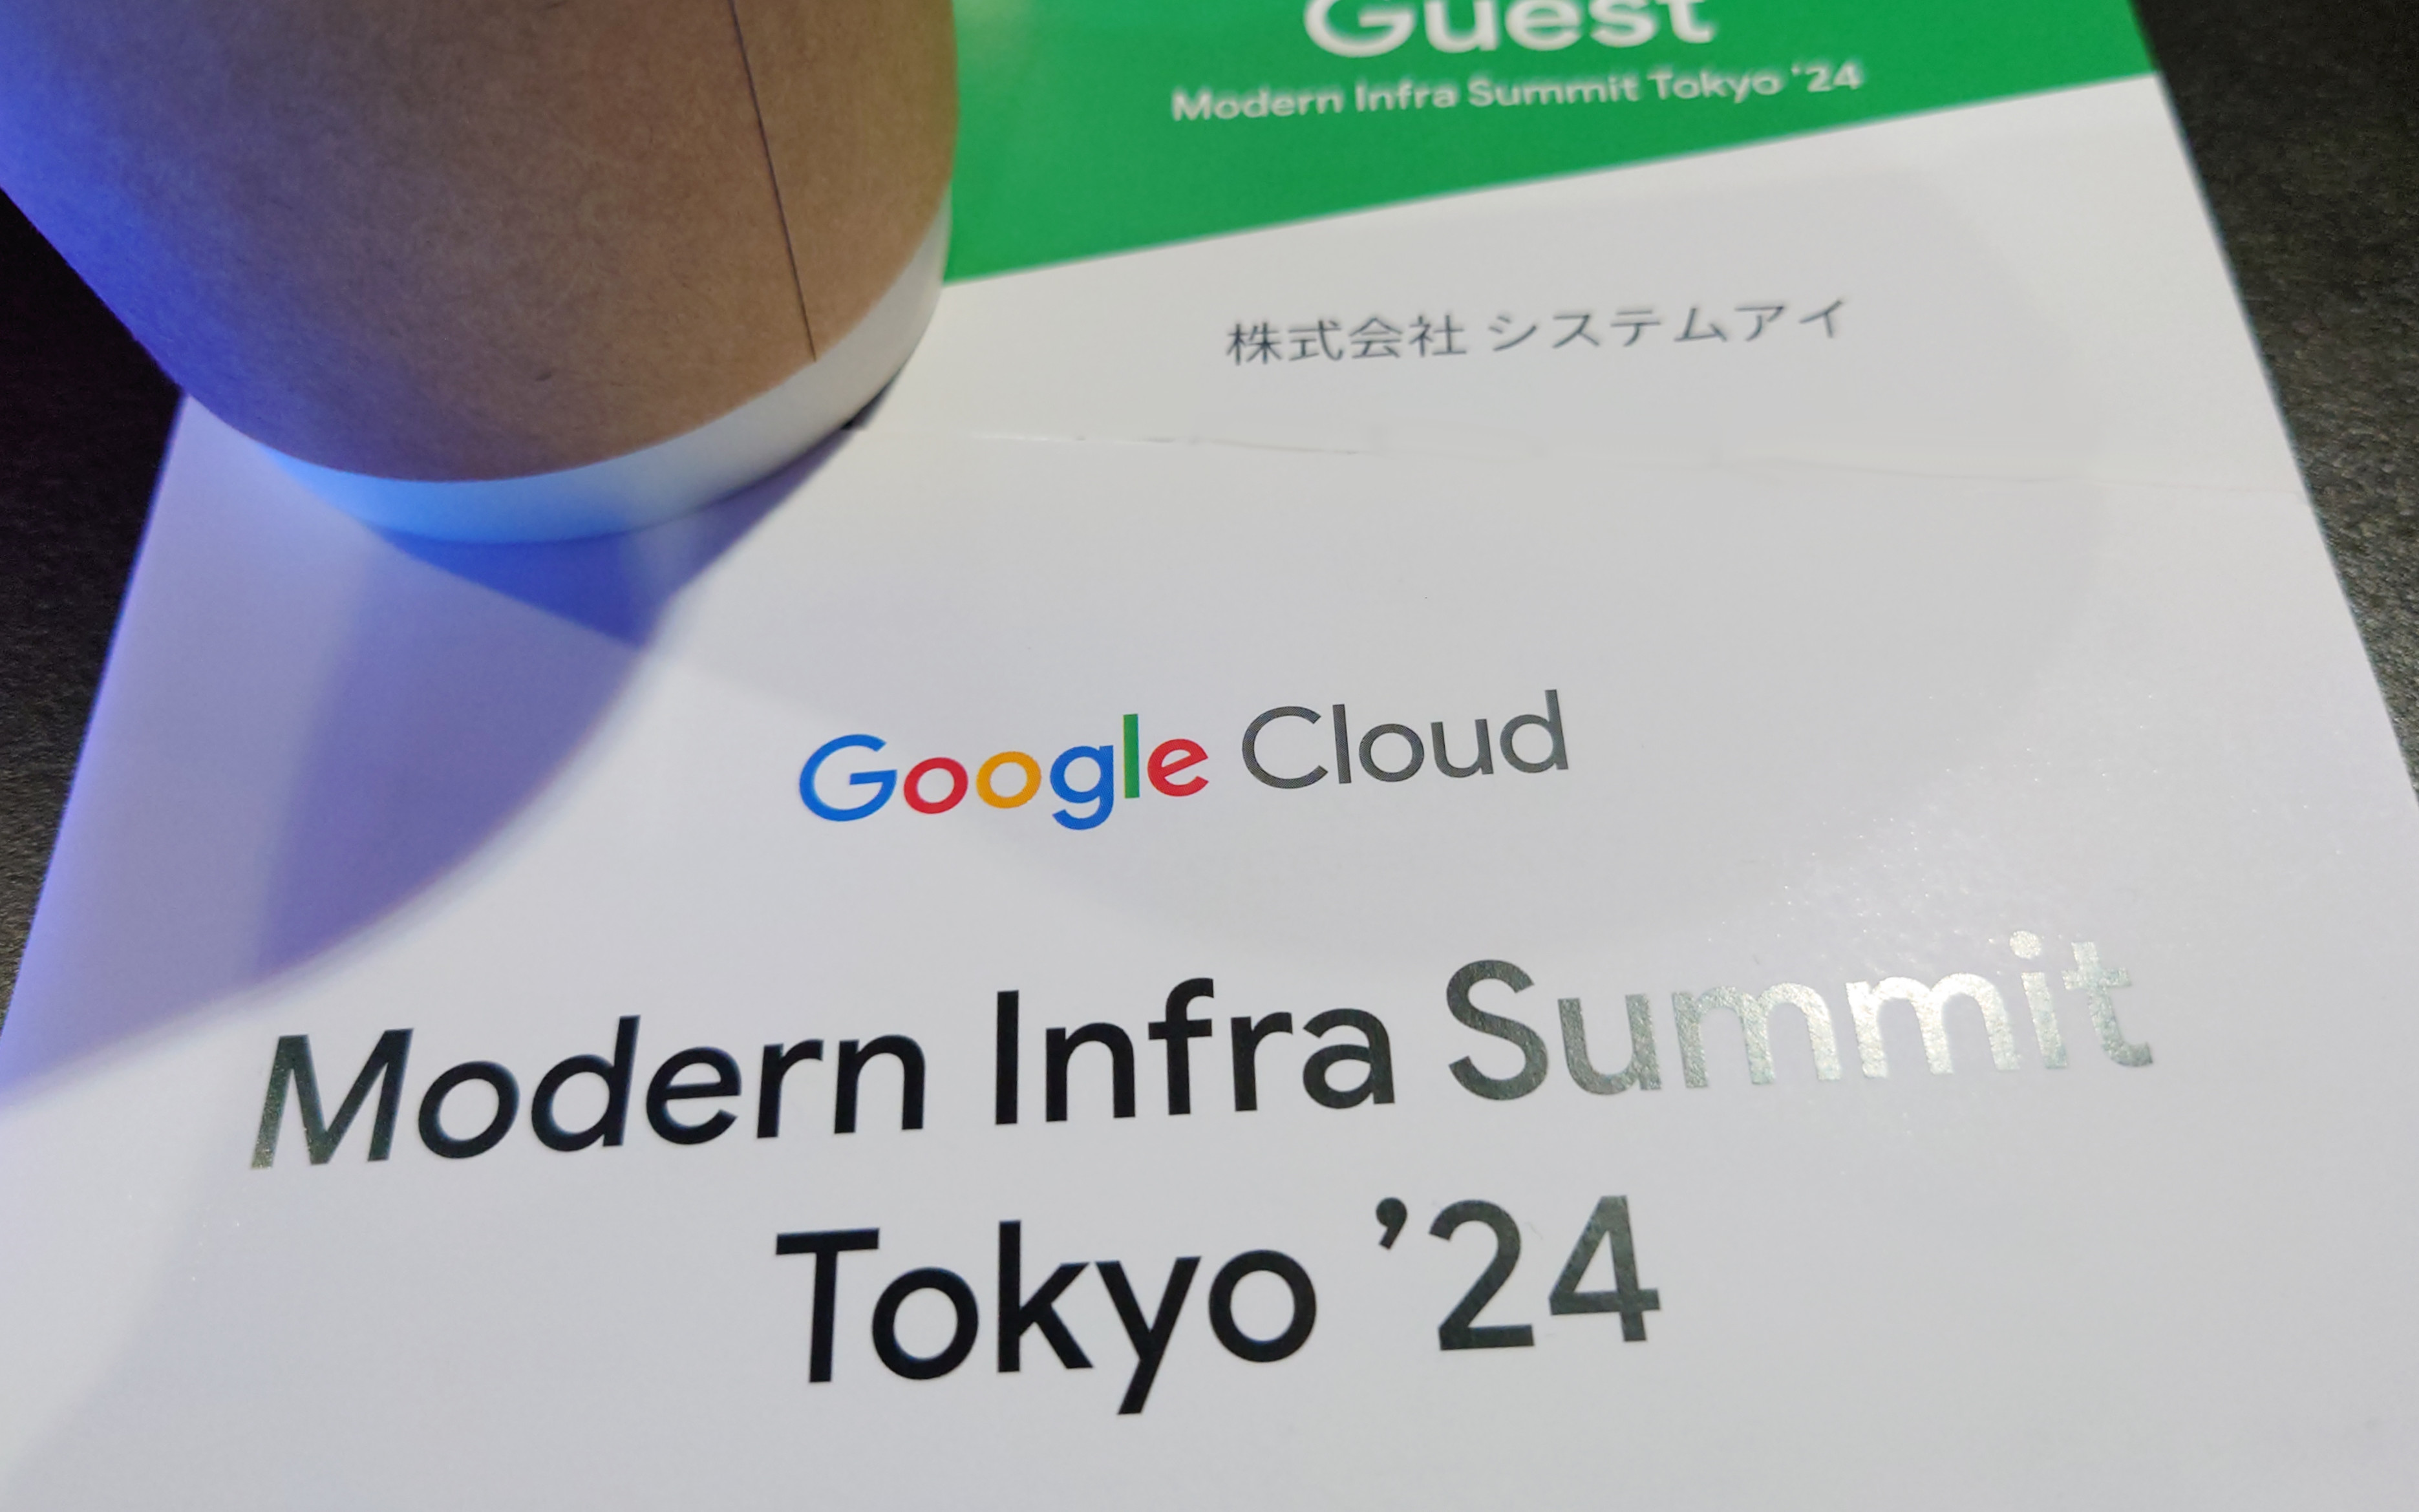 Modern Infra Summit Tokyo '24